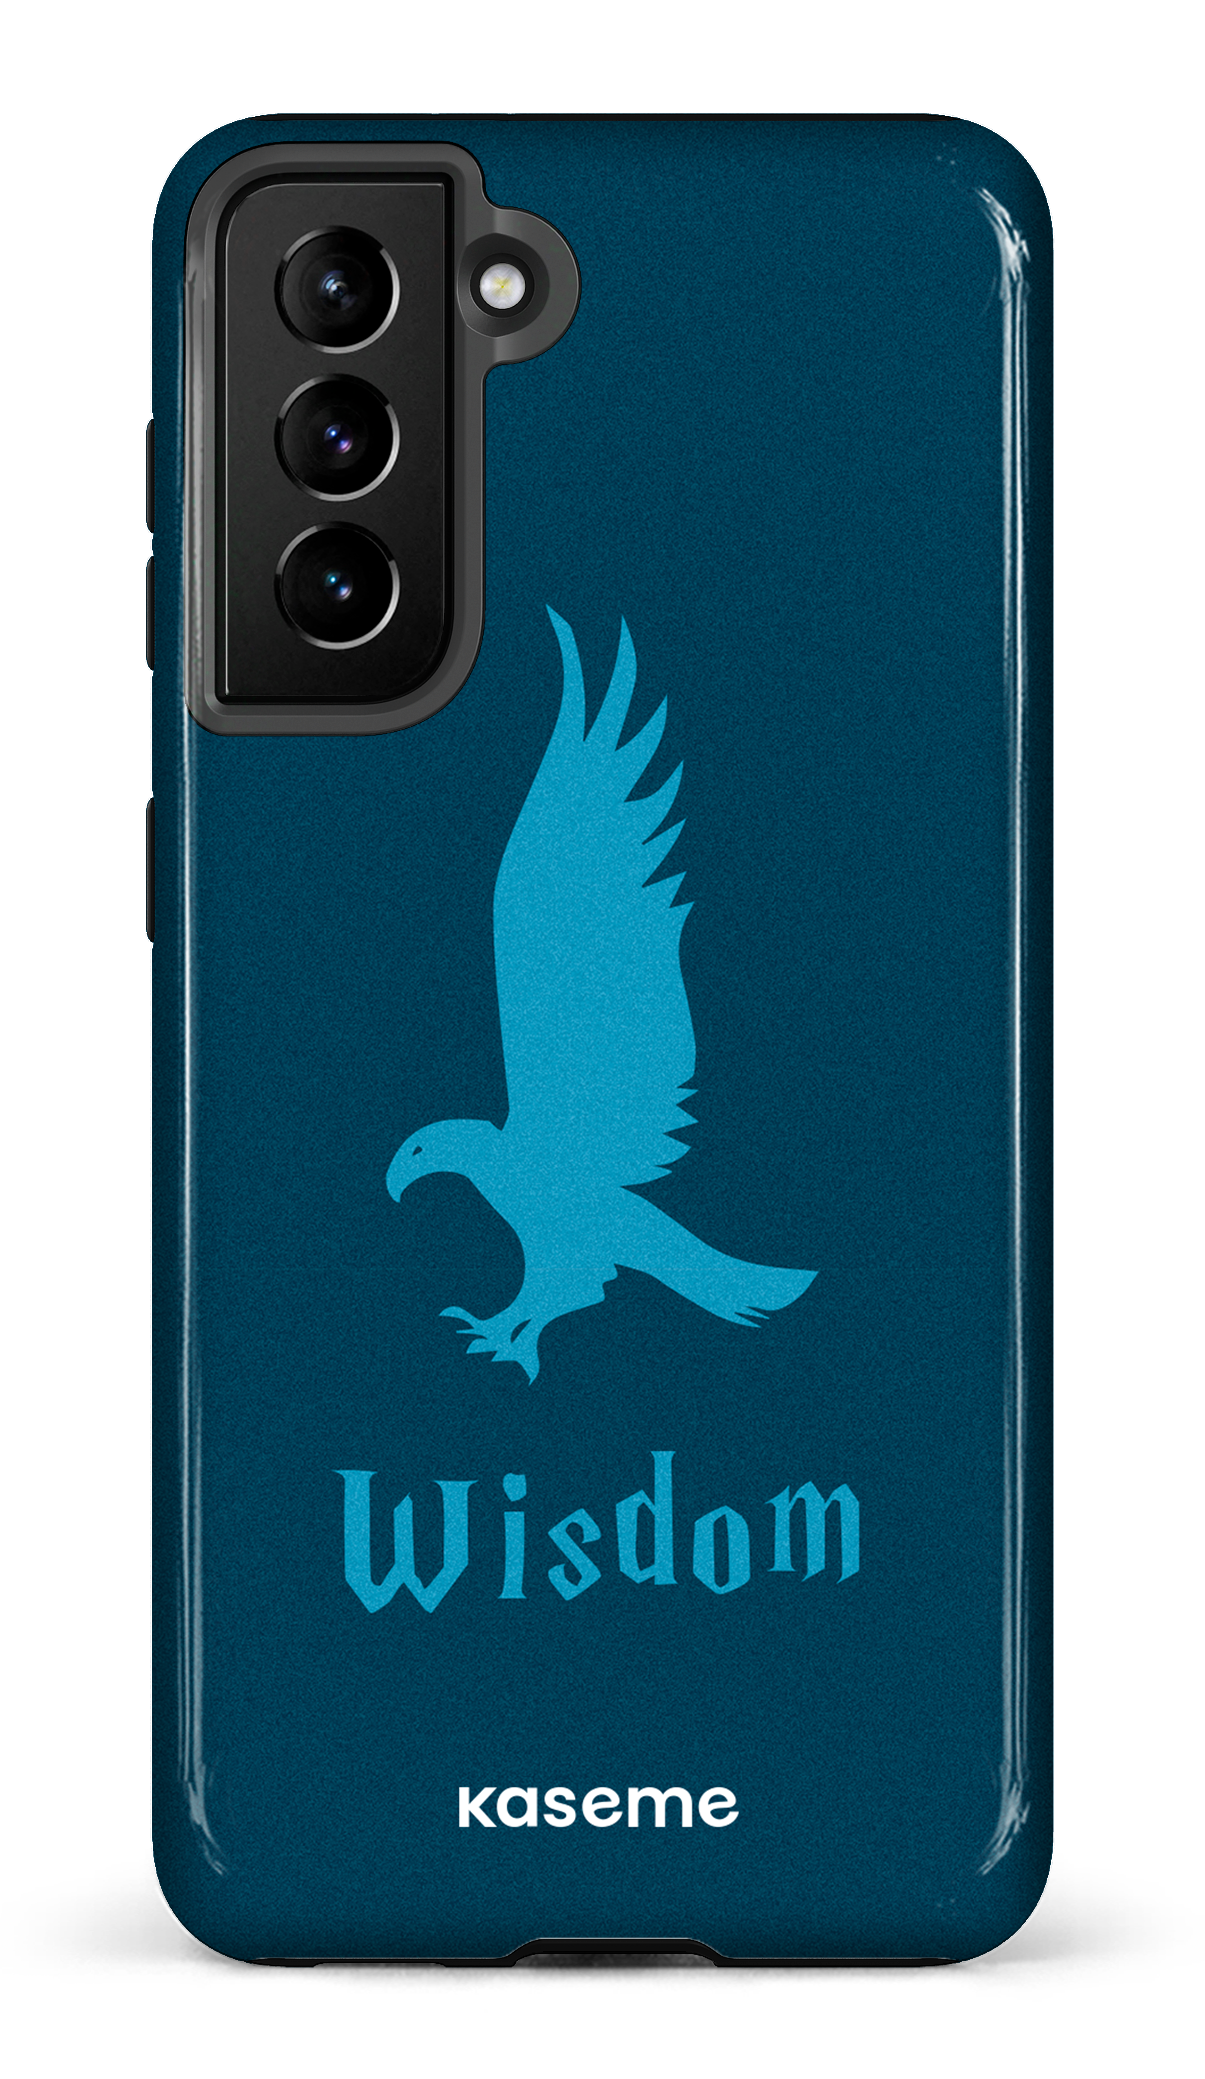 Wisdom - Galaxy S21